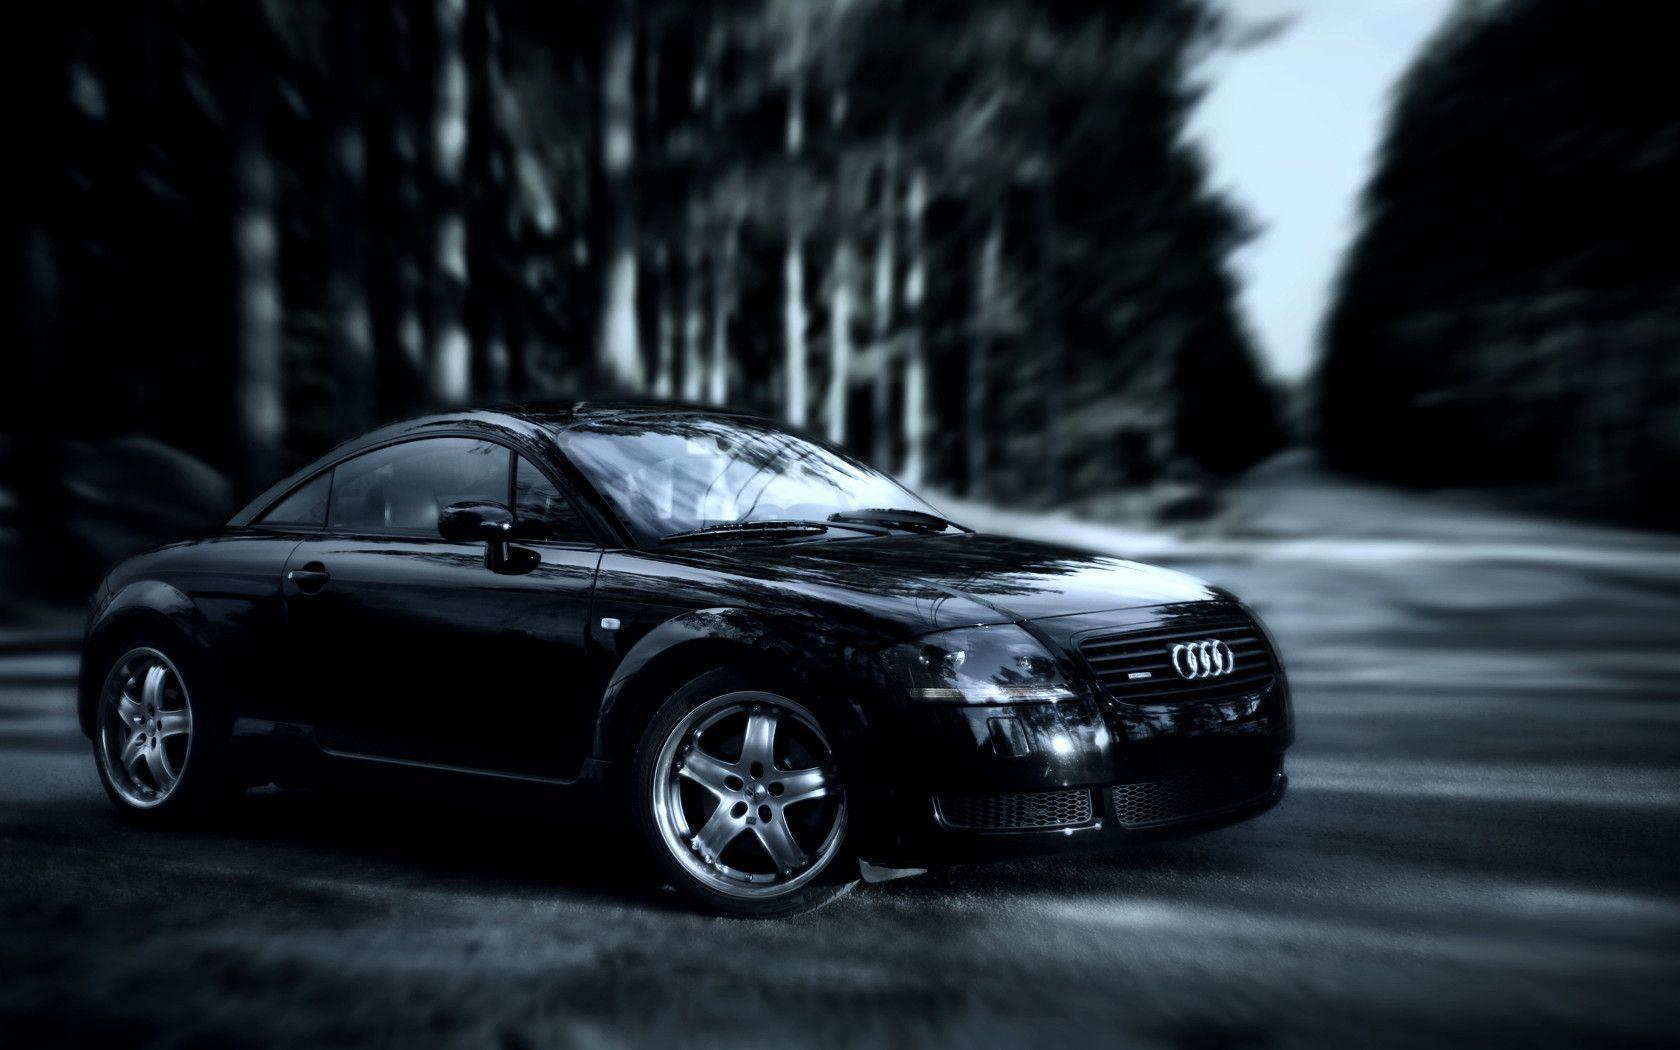 Fonds d&;écran Audi Tt, tous les wallpaper Audi Tt